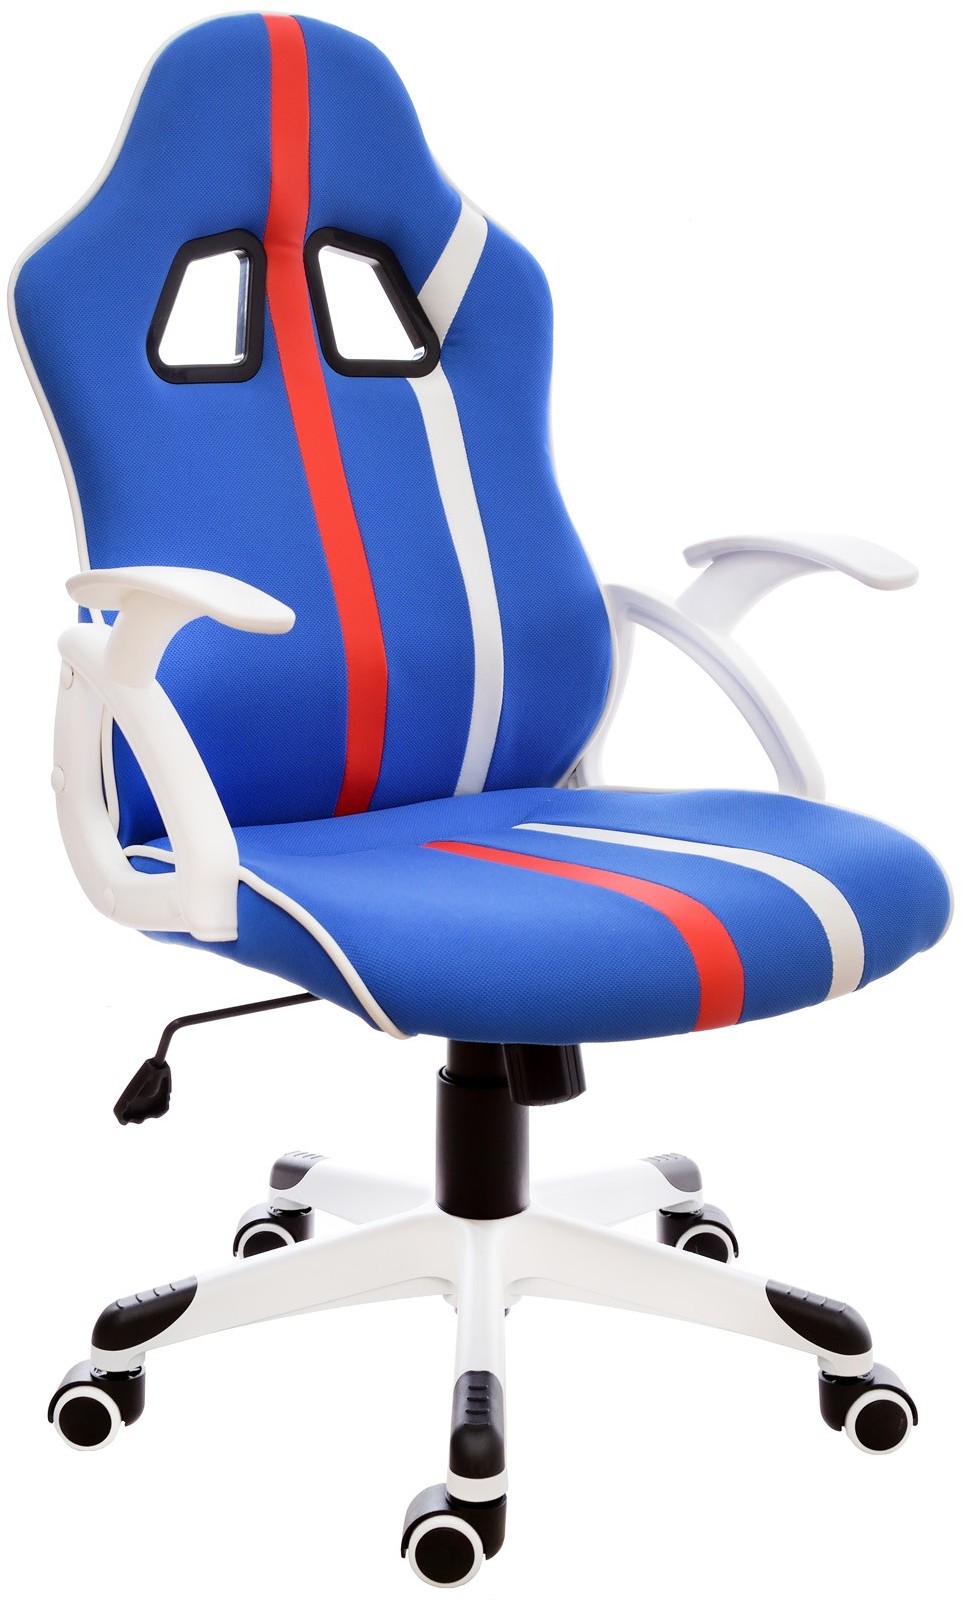 Giosedio Fotel biurowy GIOSEDIO niebieski, model FBL008 FBL008